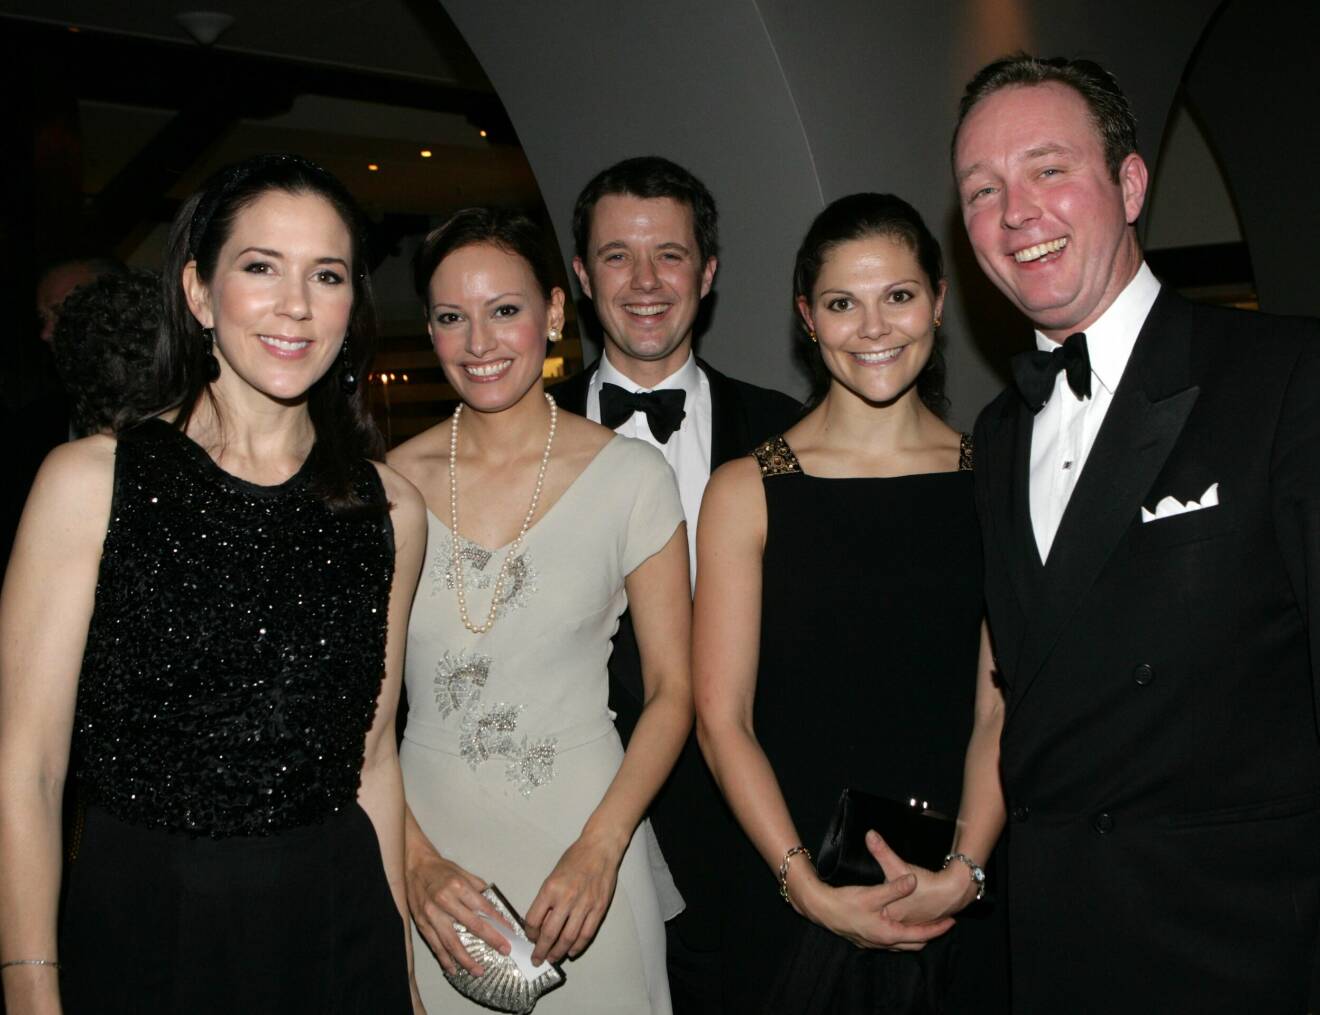 Båstad 2006: Kronprinsessan Victoria på släktfest med prins Gustav och prinsessan Carina Axelsson, kronprins Frederik och kronprinsessan Mary